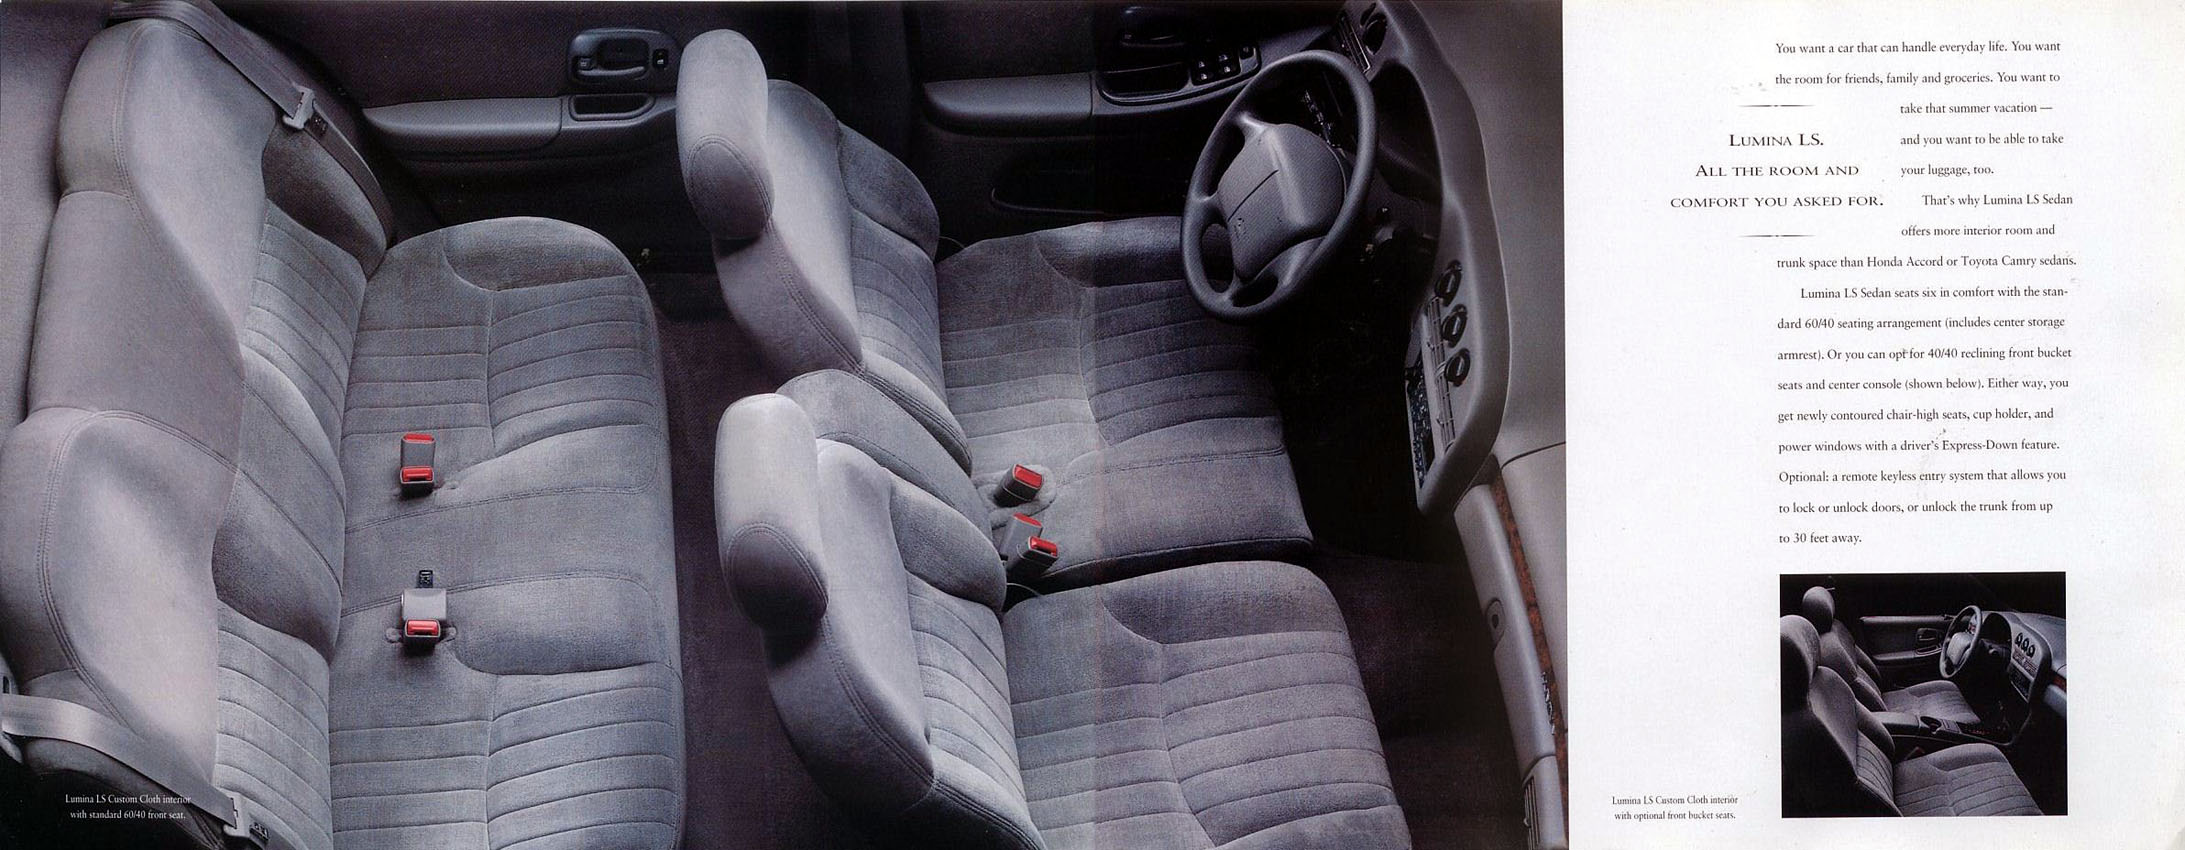 1995_Chevrolet_Lumina-06-07